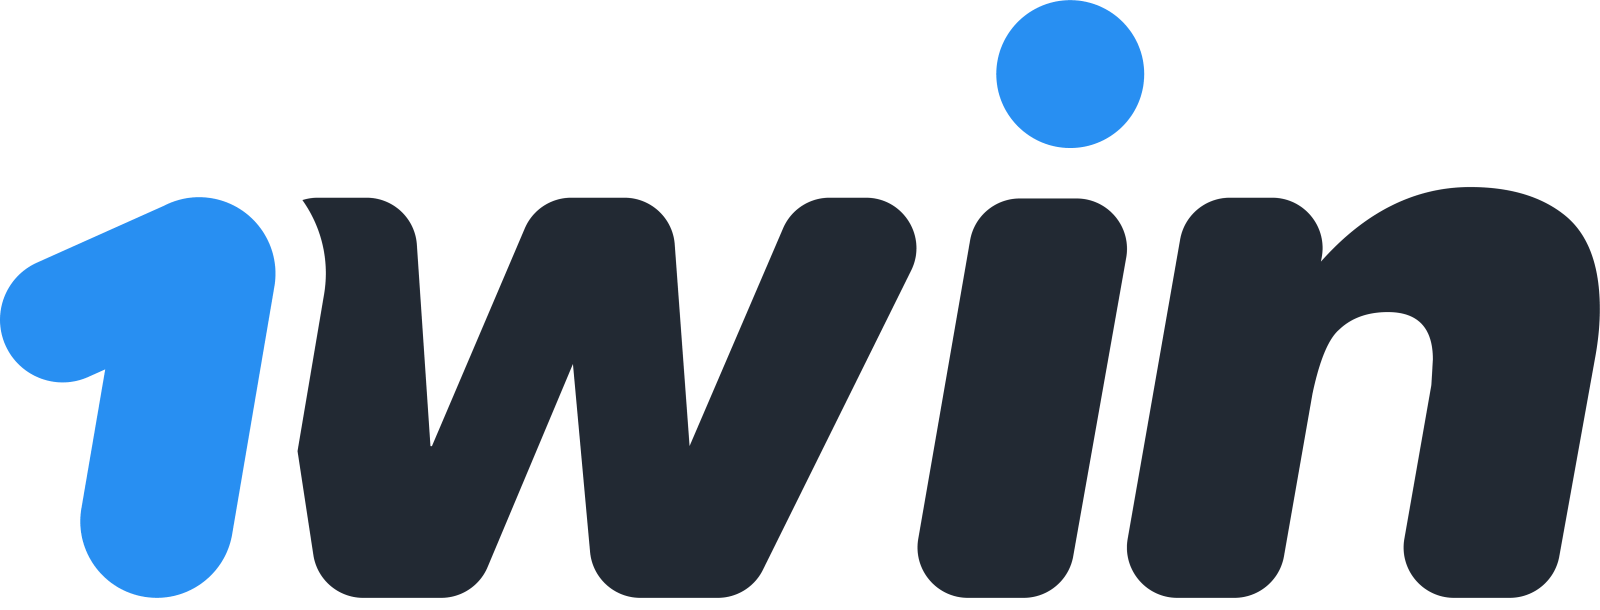 1Win logotipo del casino